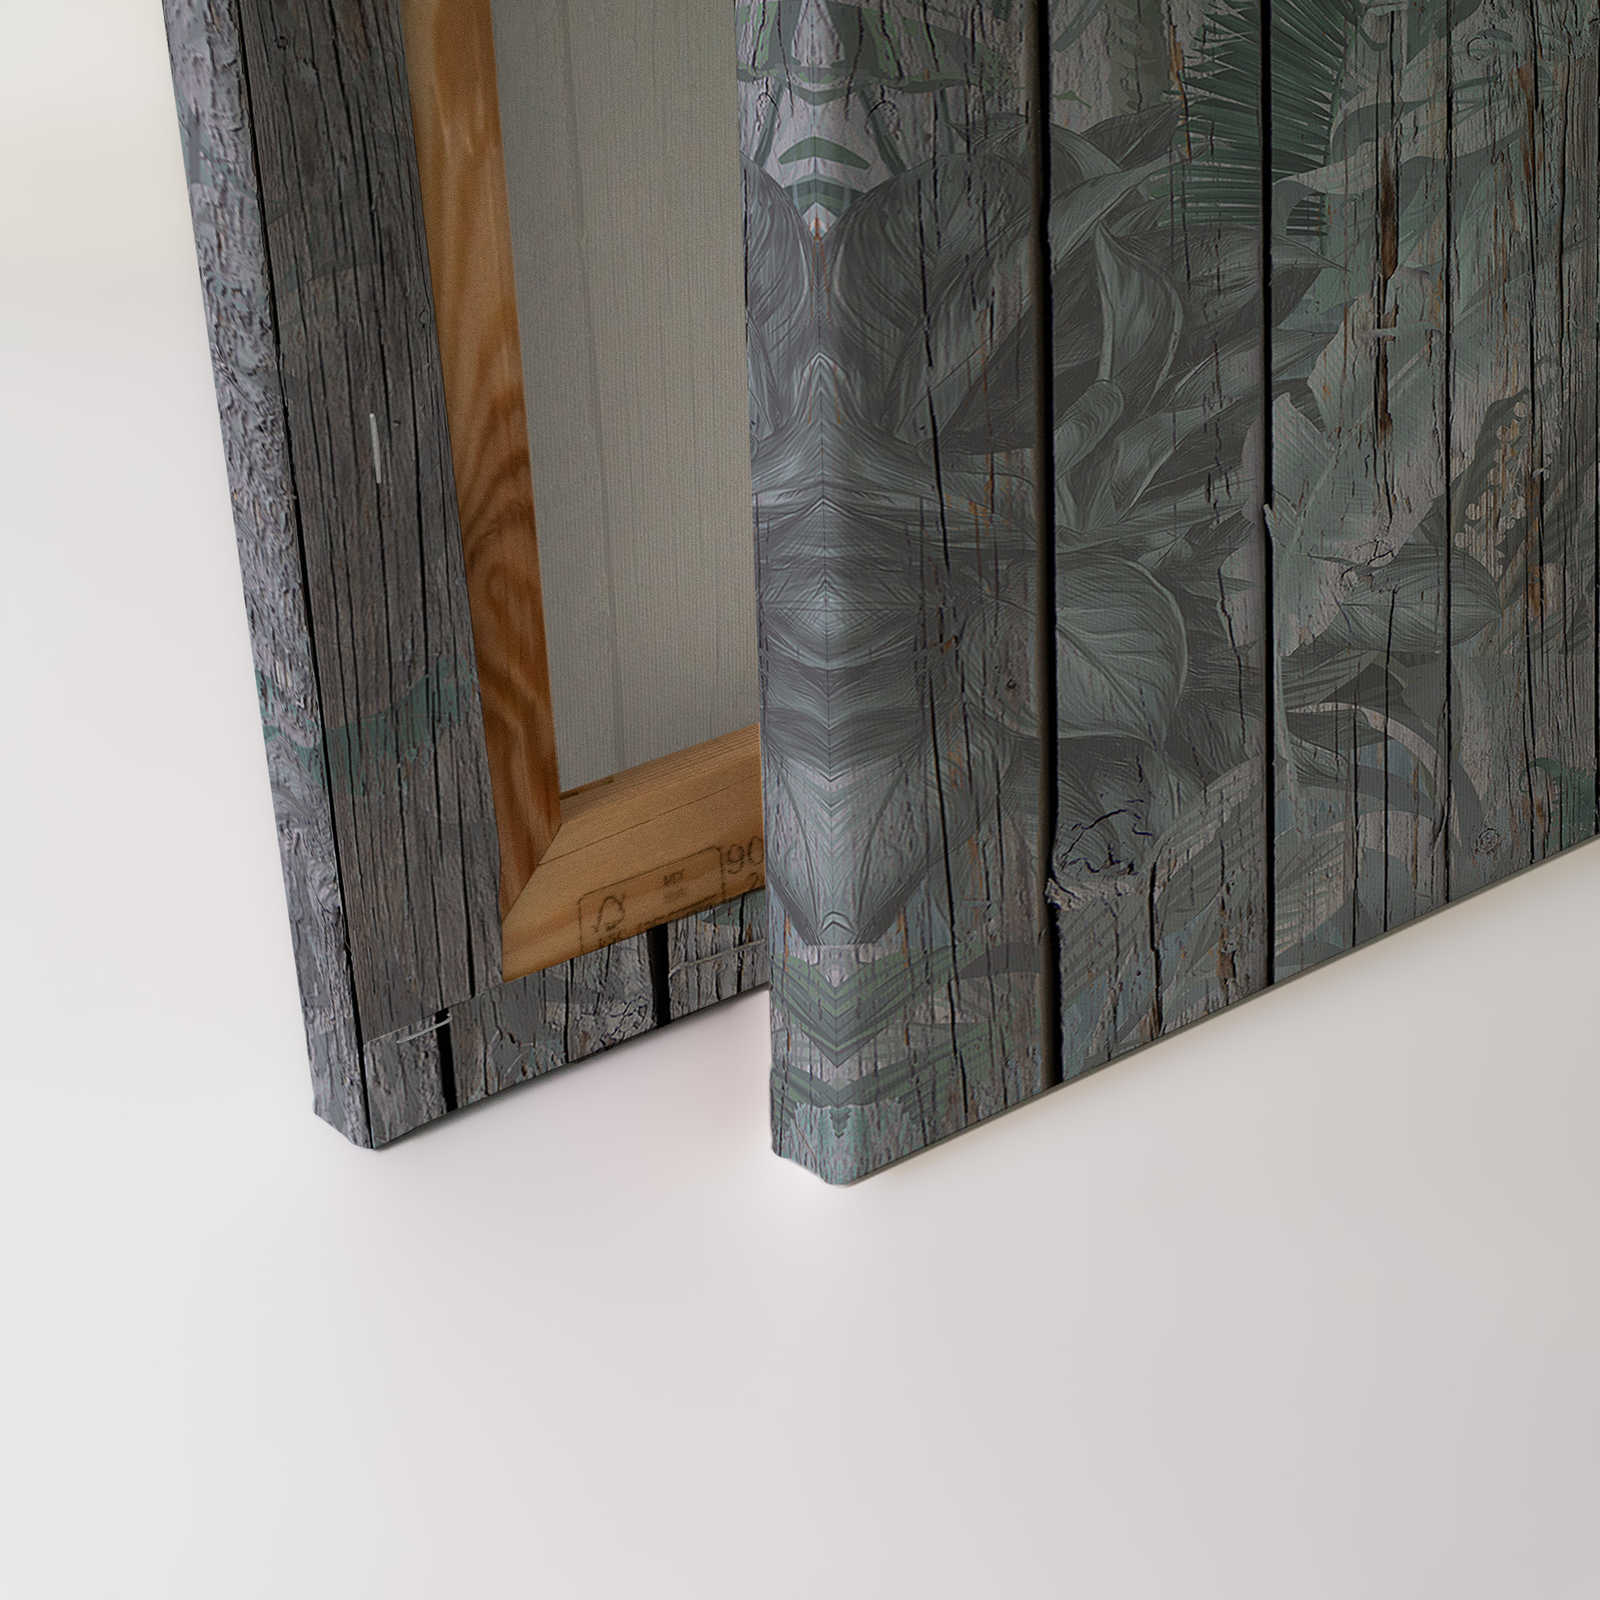             Leinwandbild Holzwand mit Dschungelpflanzen – 0,90 m x 0,60 m
        